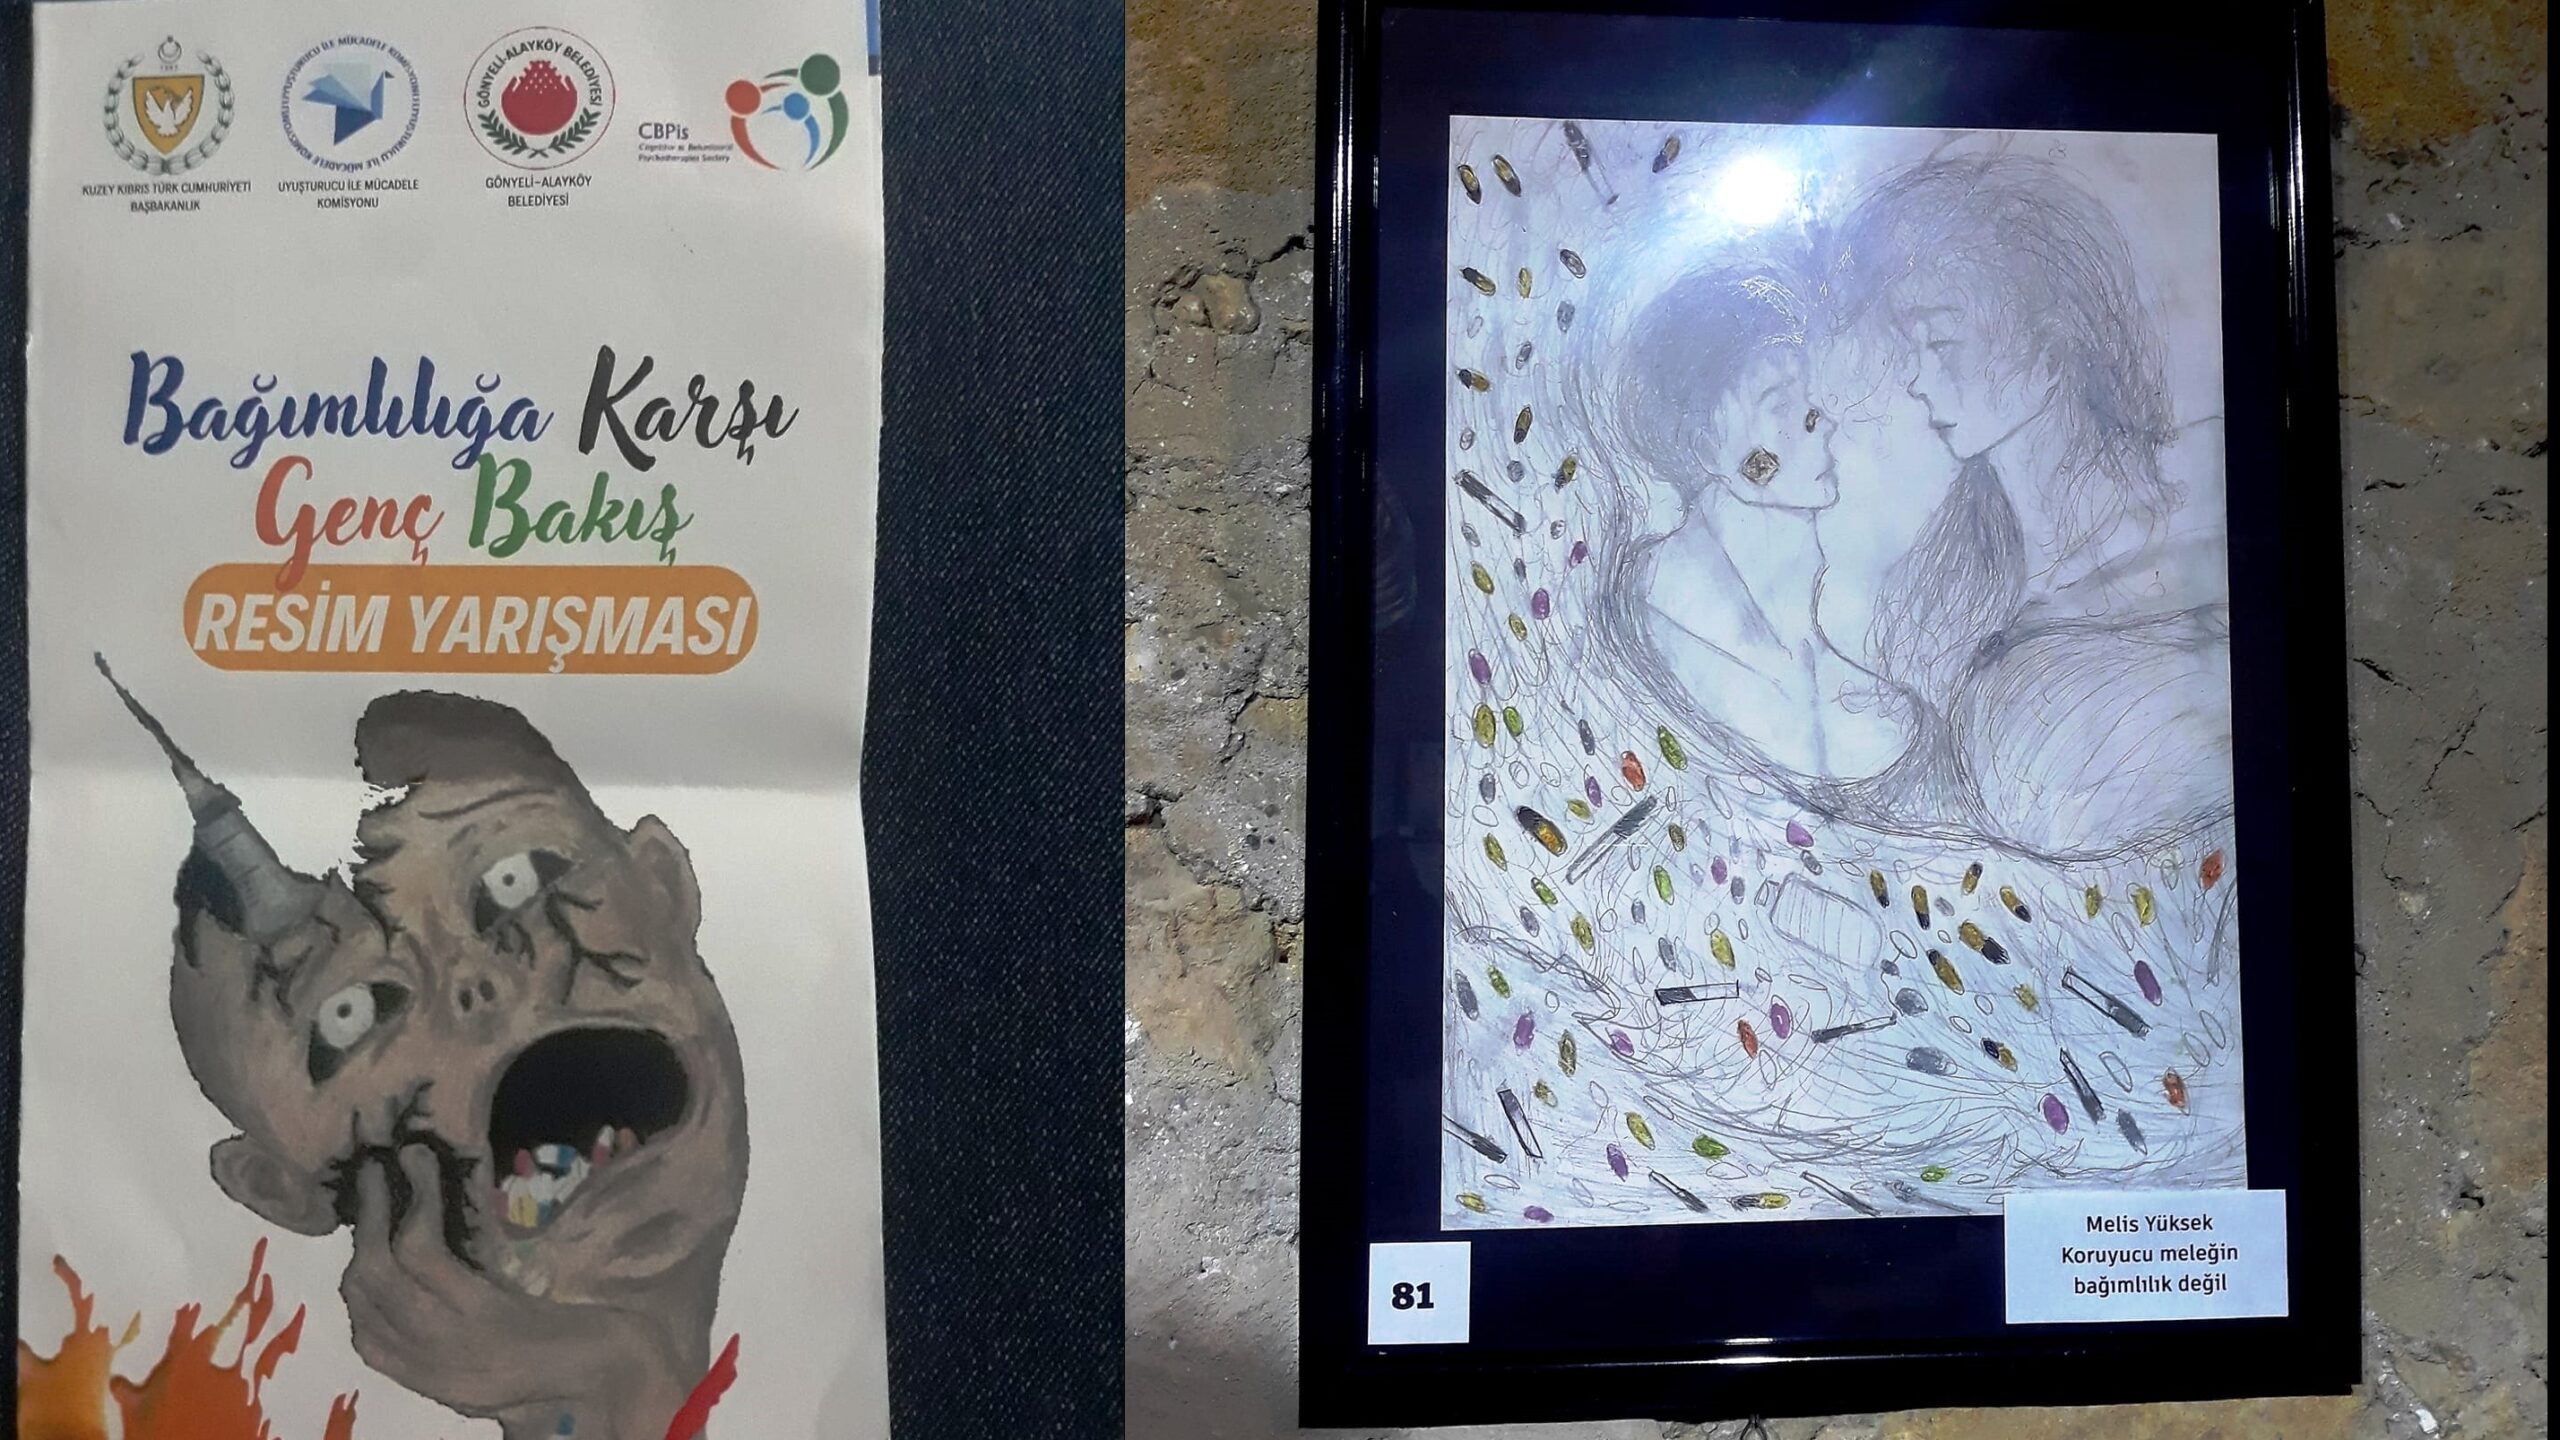 “Bağımlılığa Karşı Genç Bakış” resim yarışmasında ödüller verildi, yarışmaya katılan resimlerden oluşan sergi Başbakan Üstel tarafından açıldı